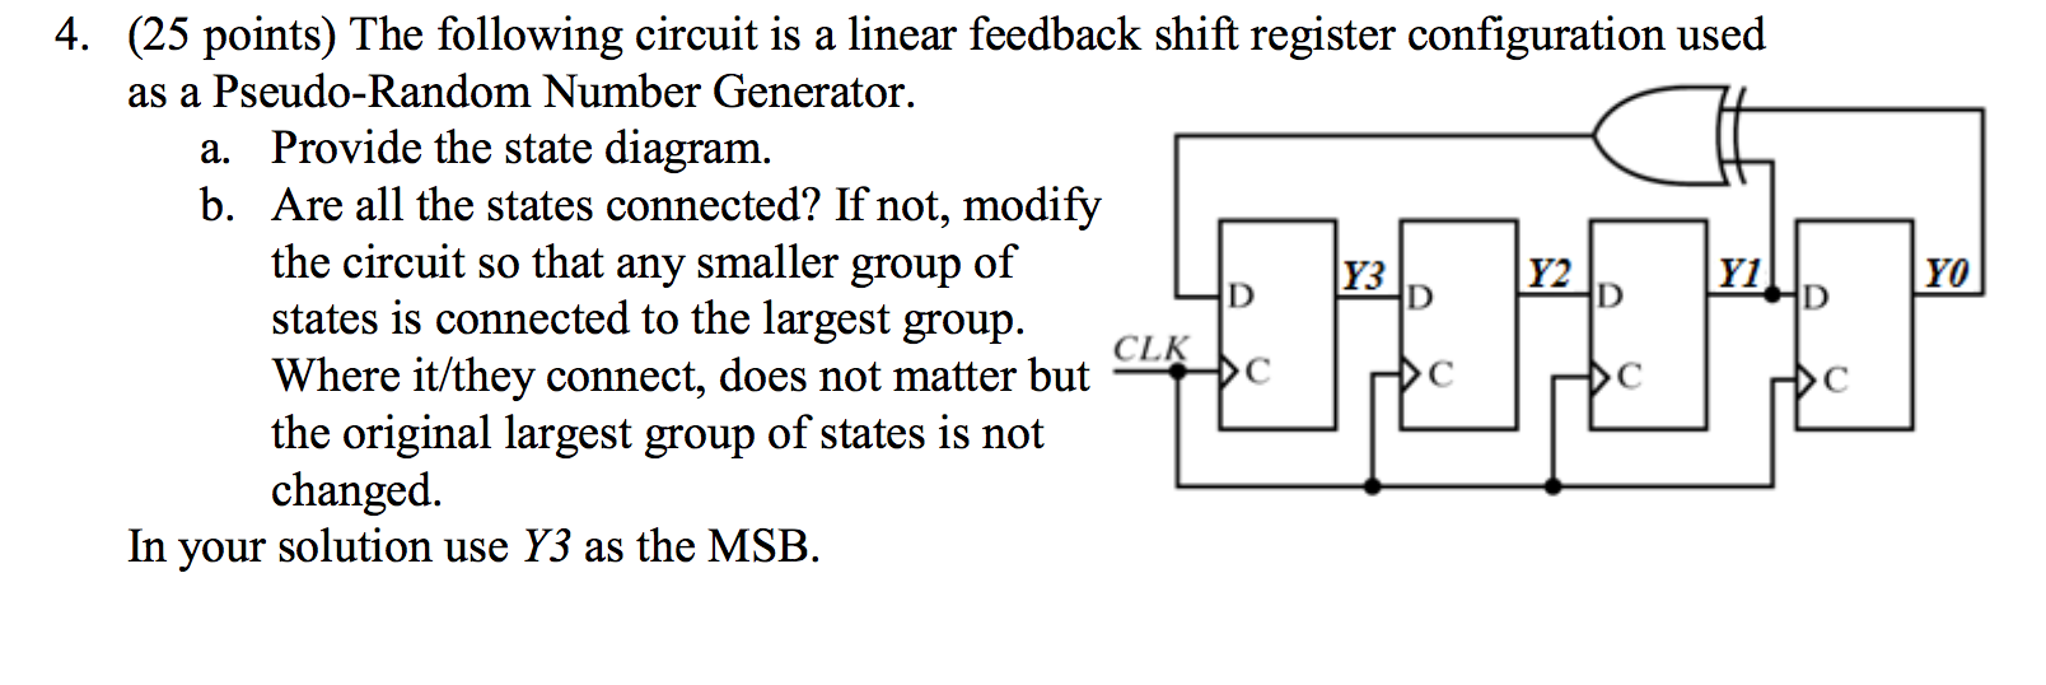 linear feedback shift register matlab